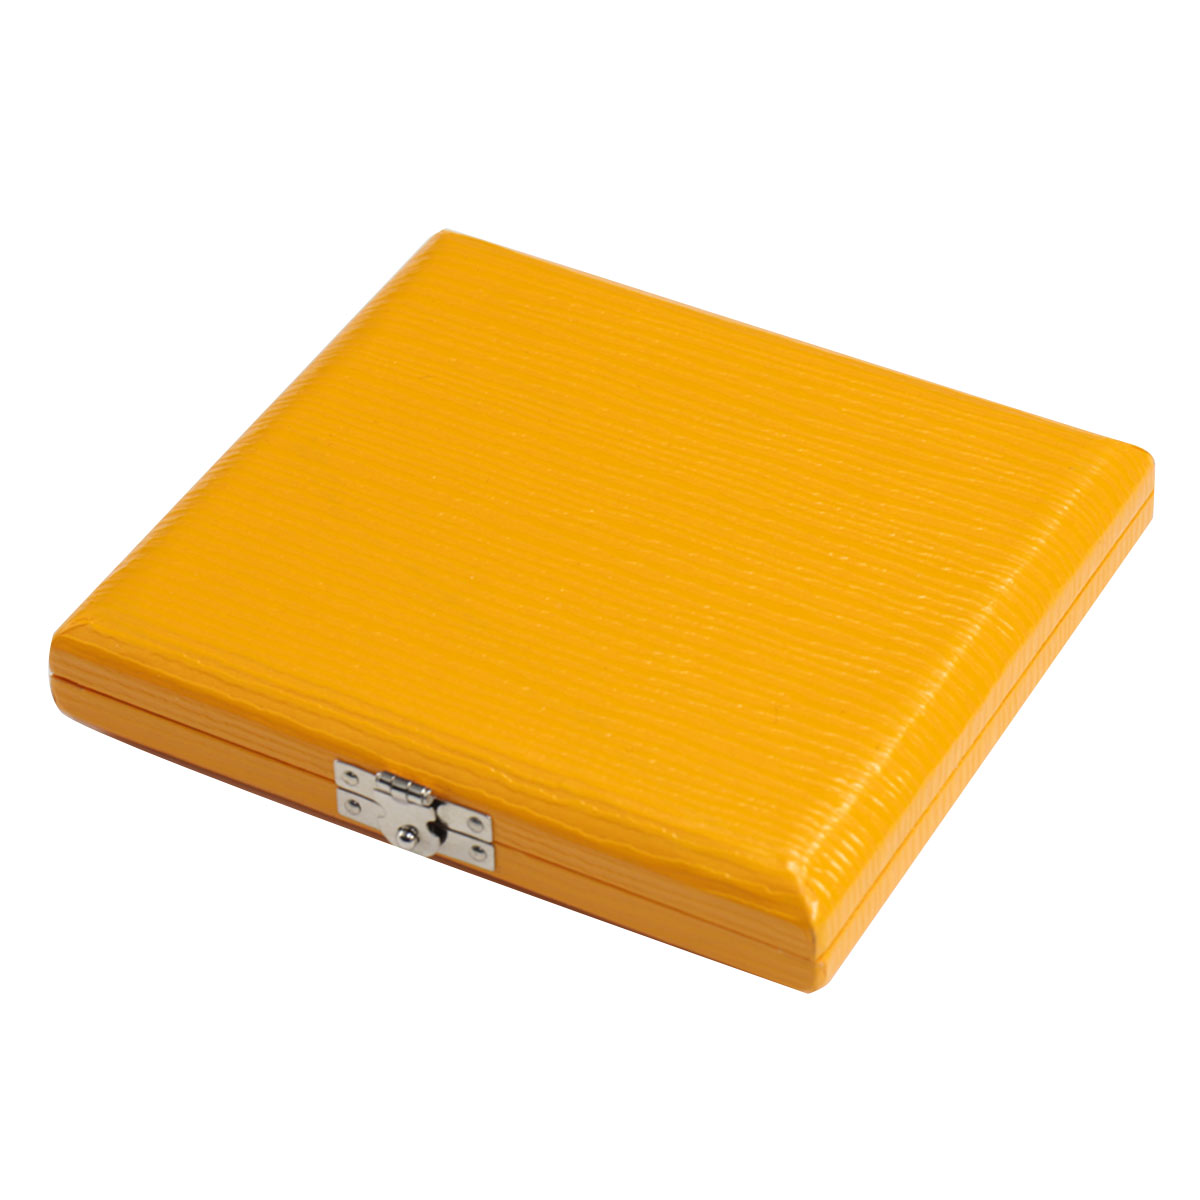 VIVACE / リードケース CL-5 オレンジ ヴィヴァーチェ リードケース 5枚収納【B♭クラリネット/アルトサックス用】